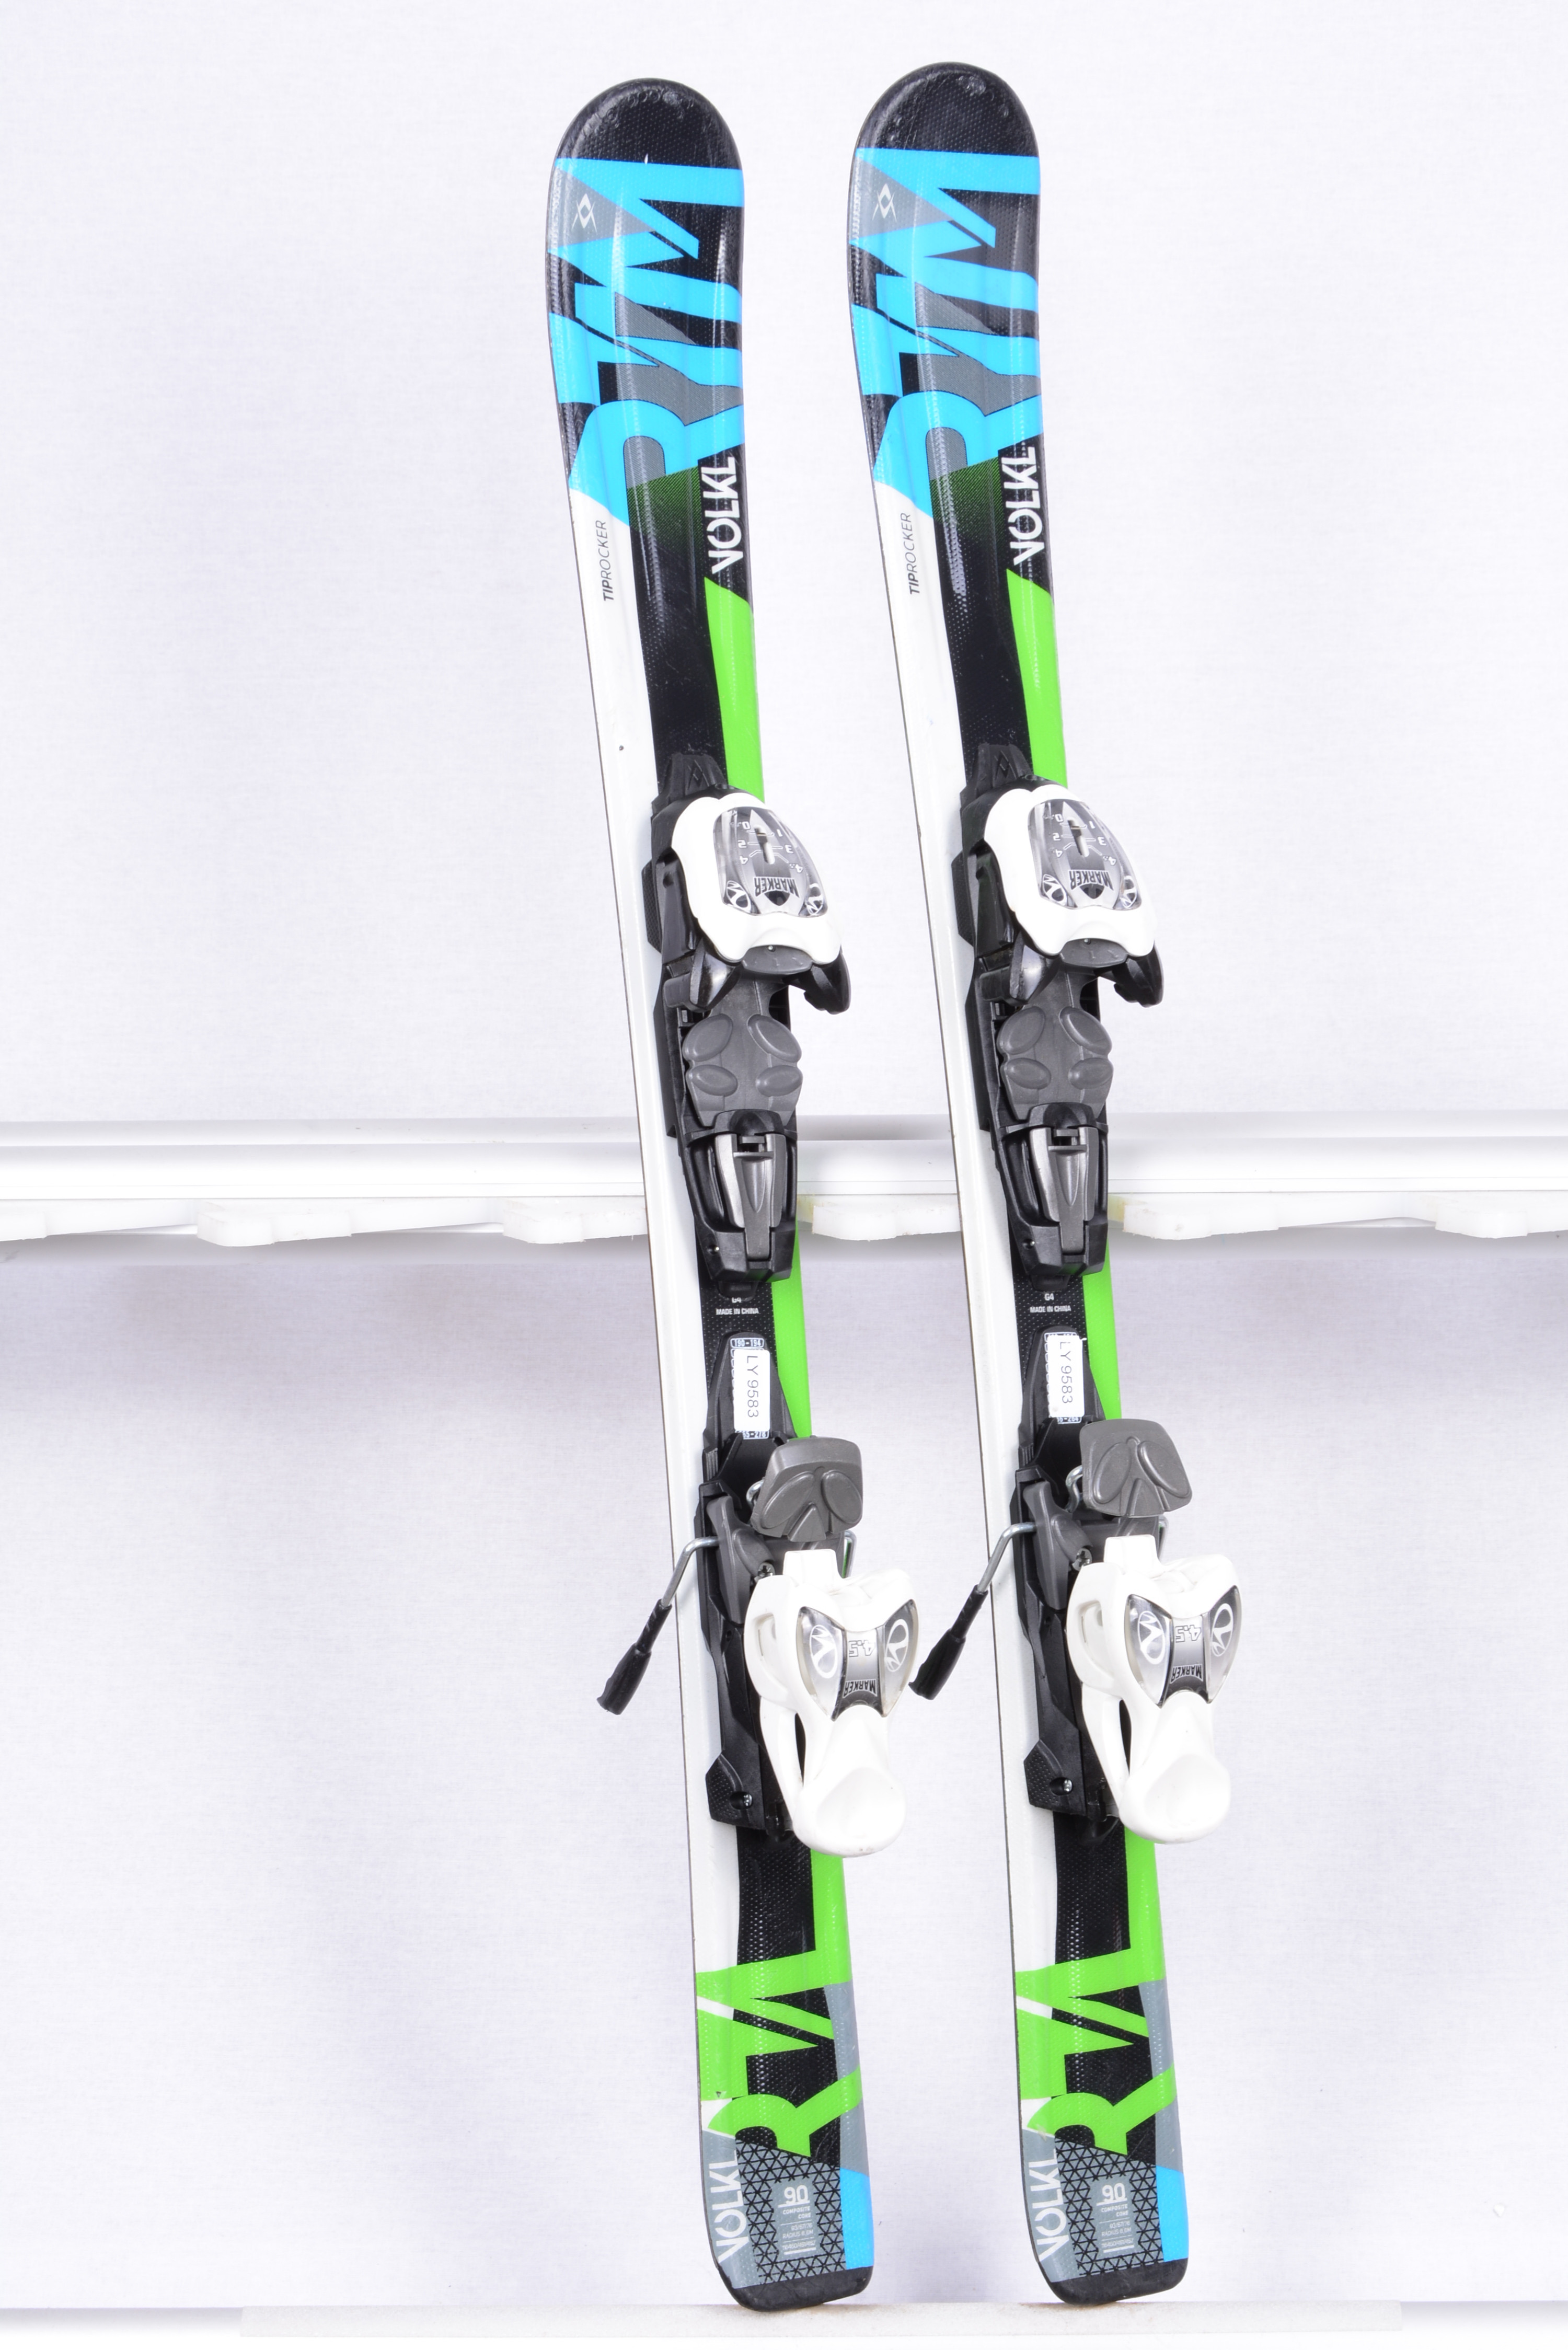 kinder ski's VOLKL RTM, TIP rocker, composite core + Marker Mardosport.be